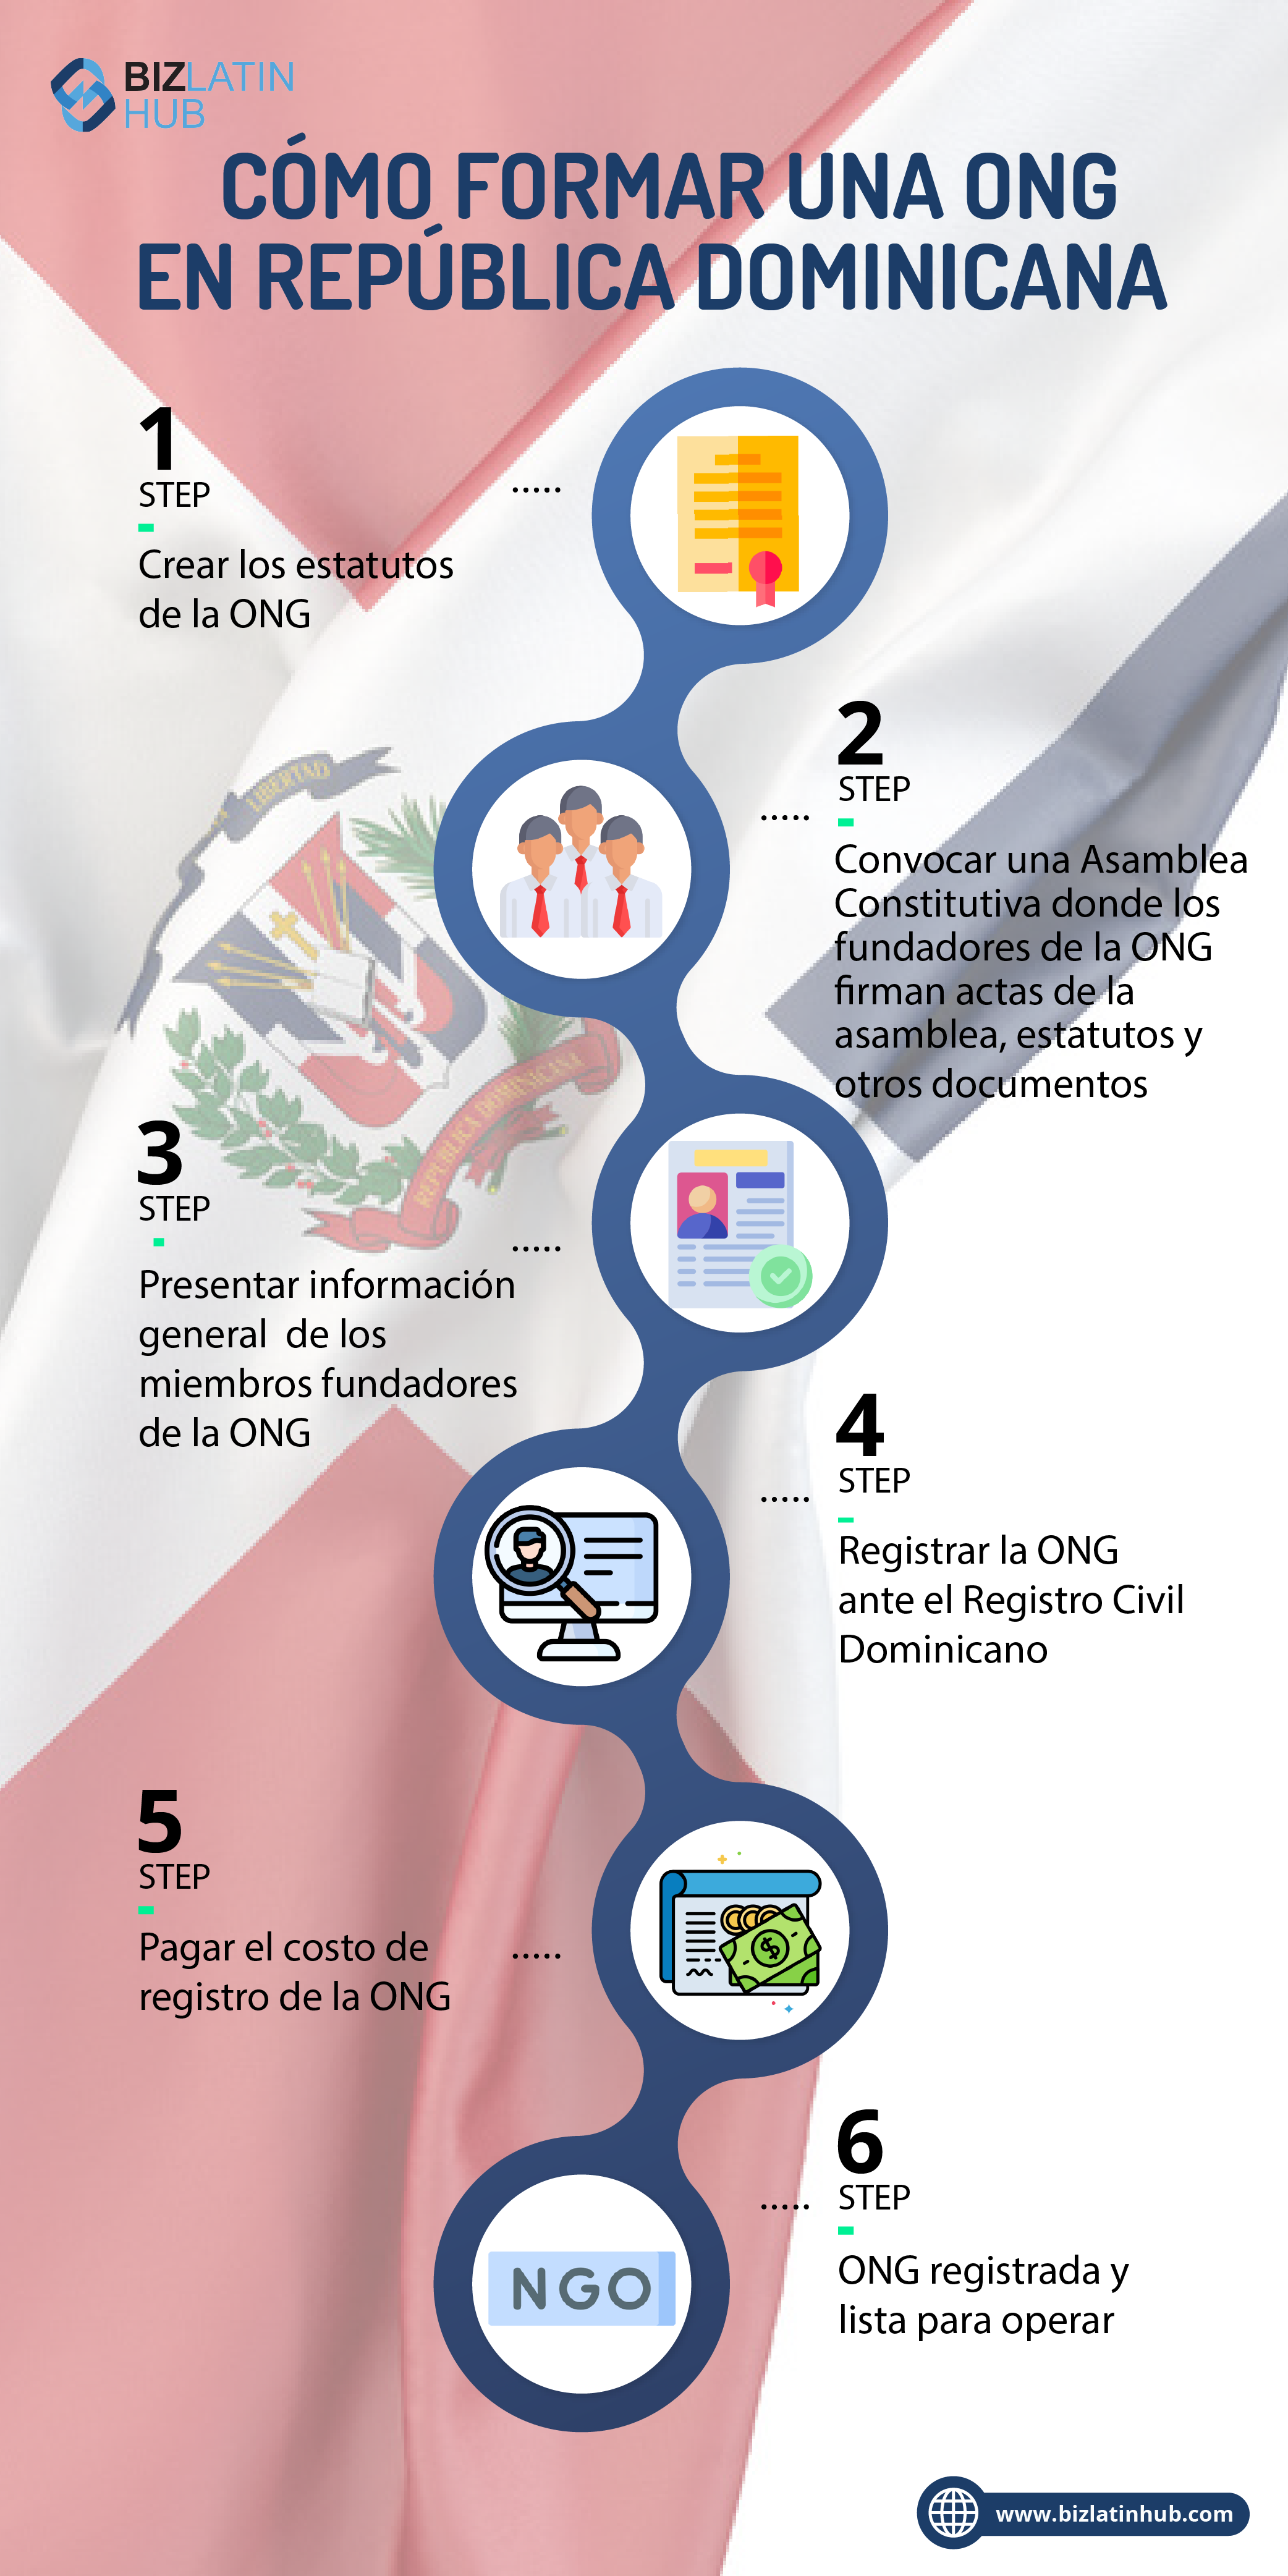 Aprenda cómo formar una ONG en República Dominicana